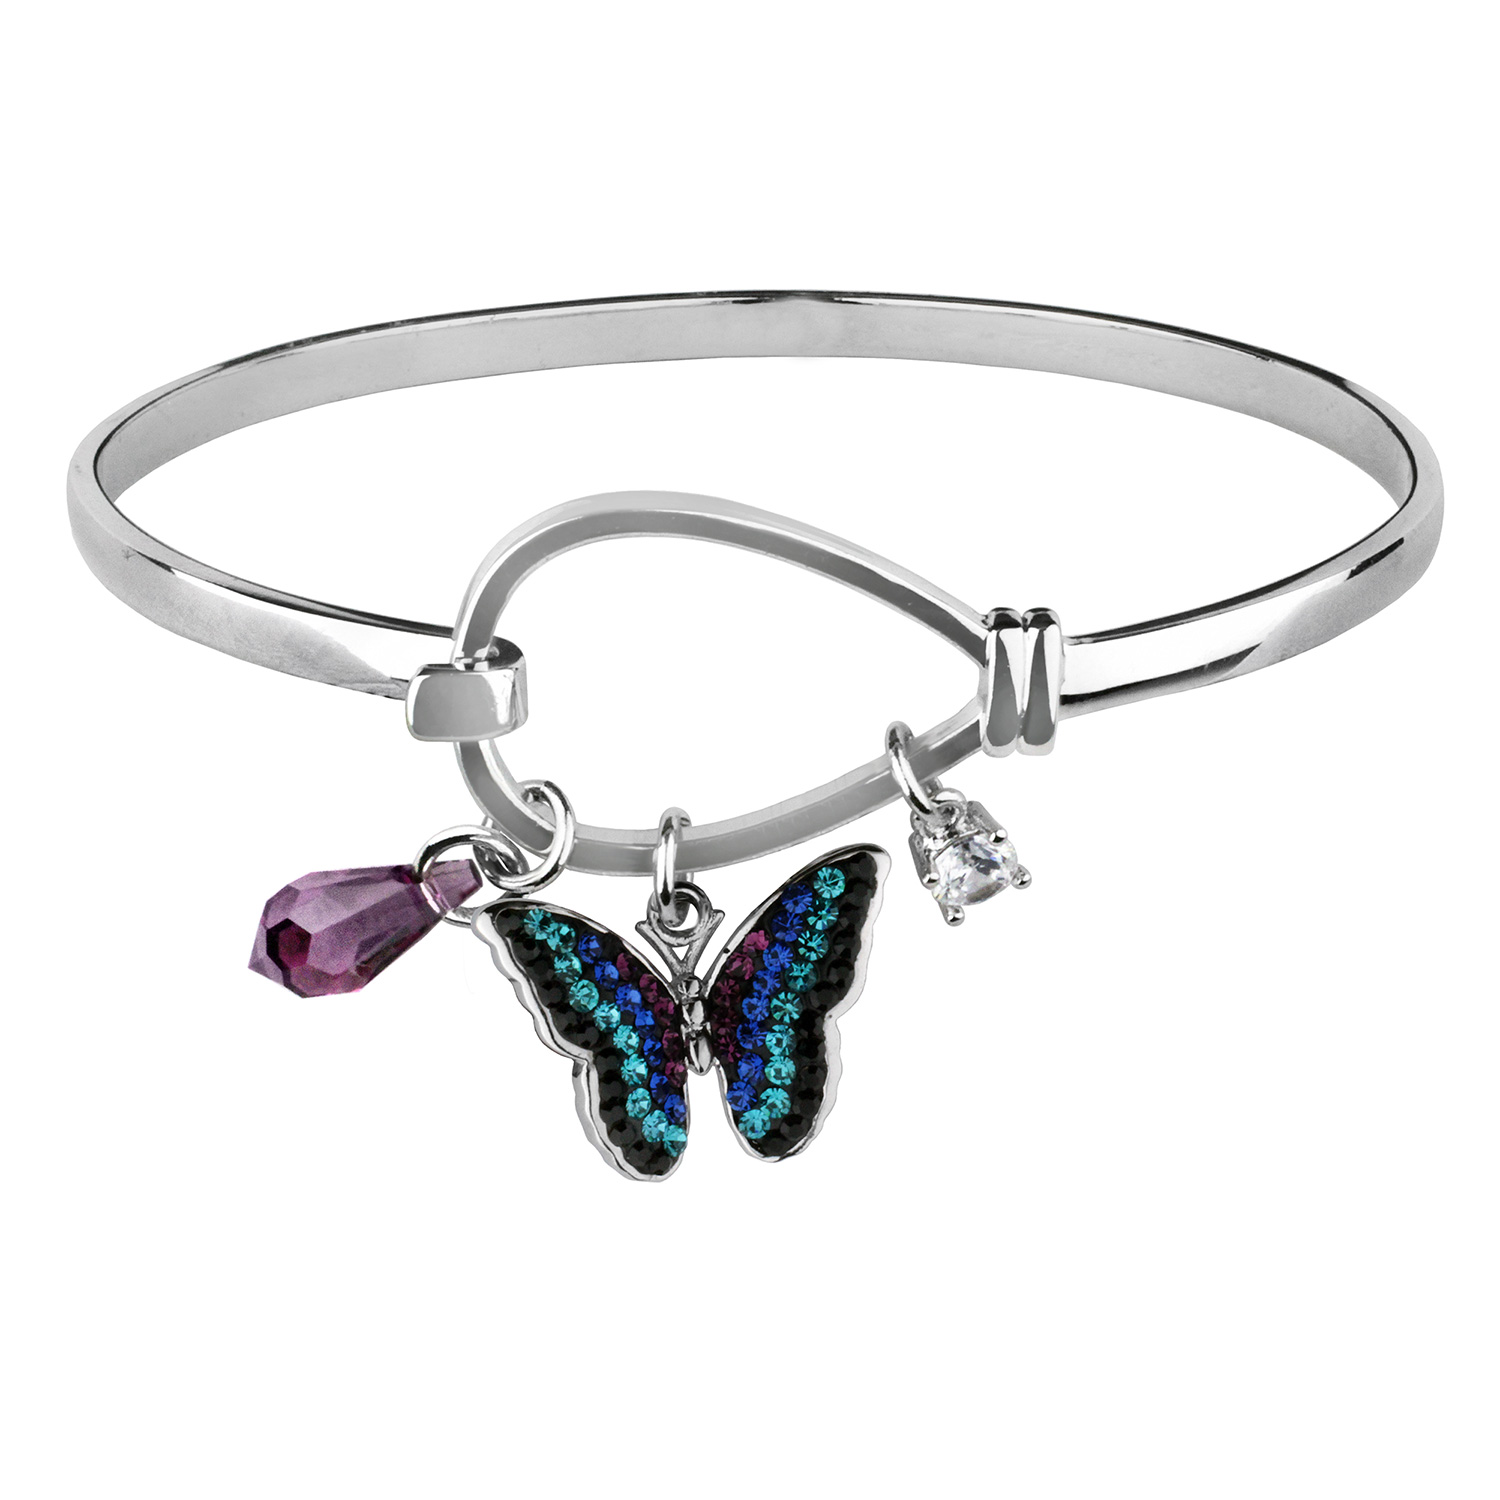  Crystal Blue Butterfly Charm Bangle Bracelet